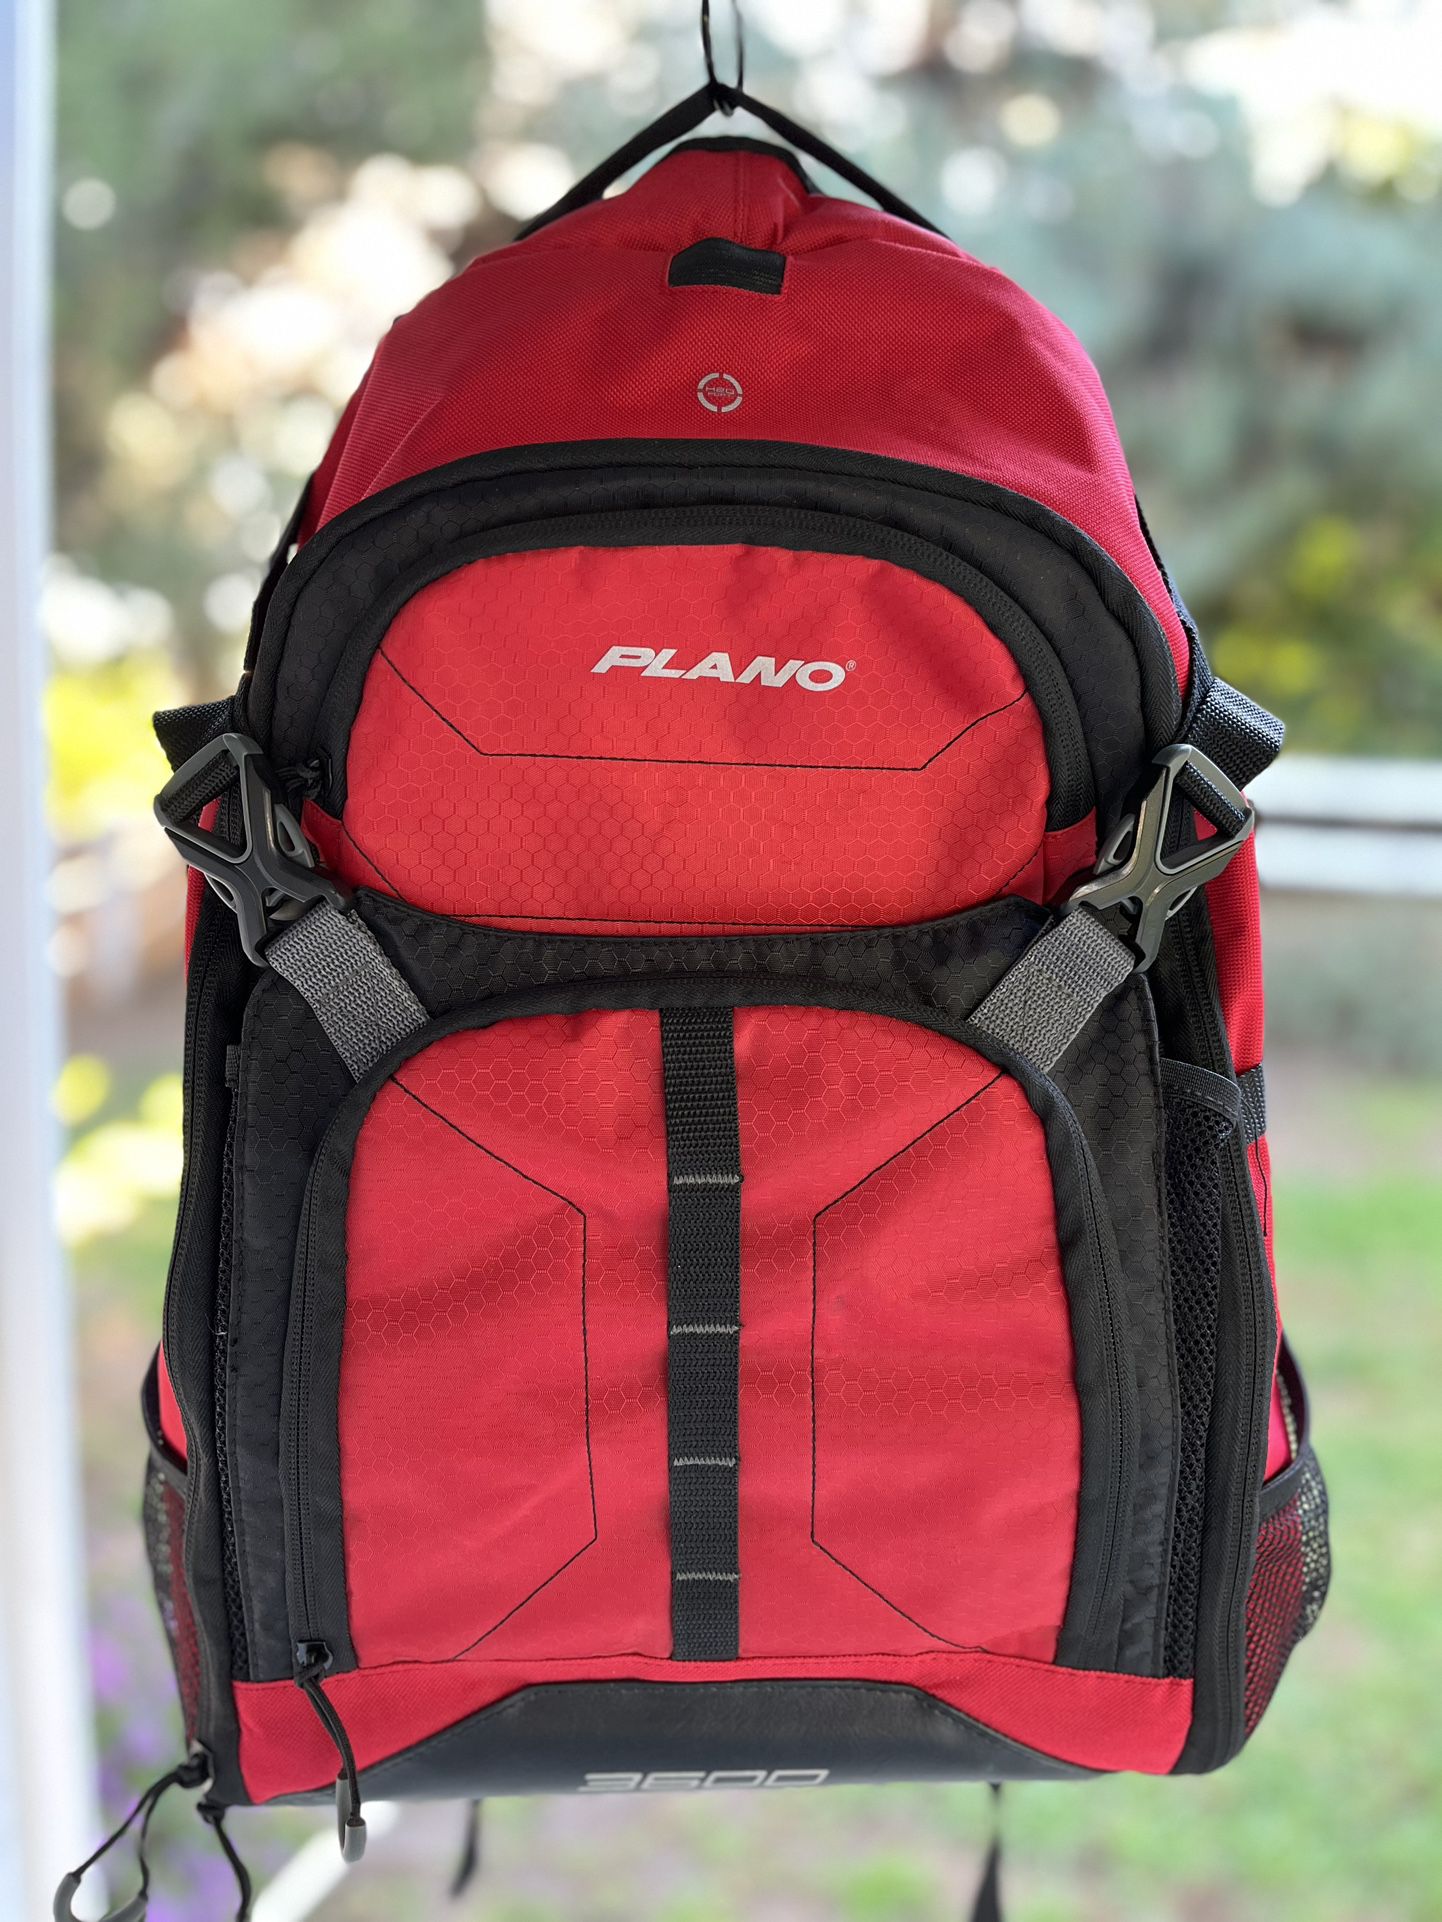 Plano 3600 Fishing Backpack, Fishing Bag, Fishing Gear